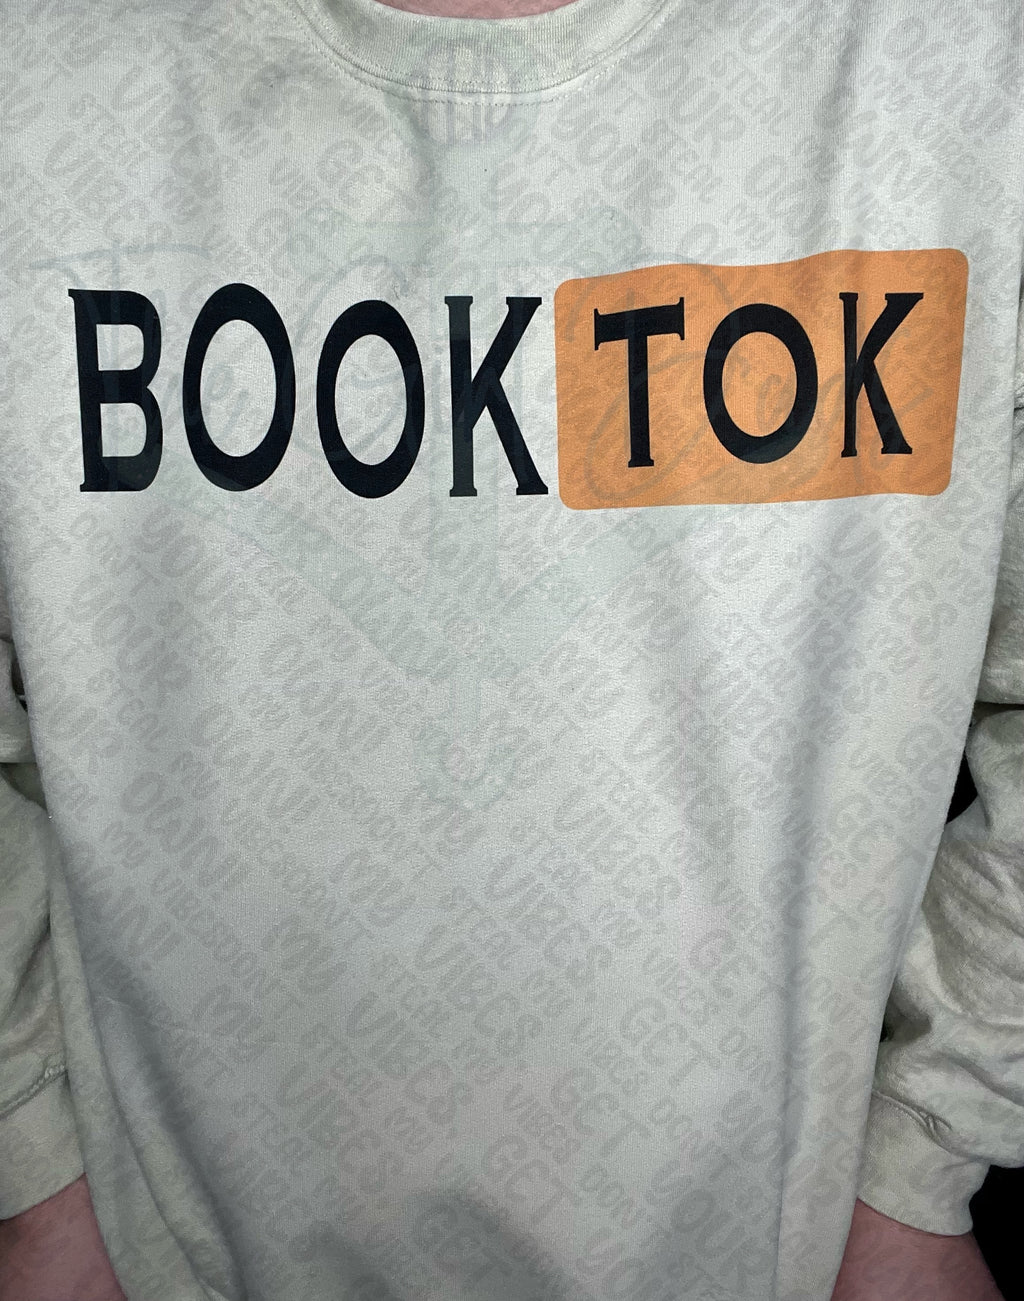 BookTok Top Design